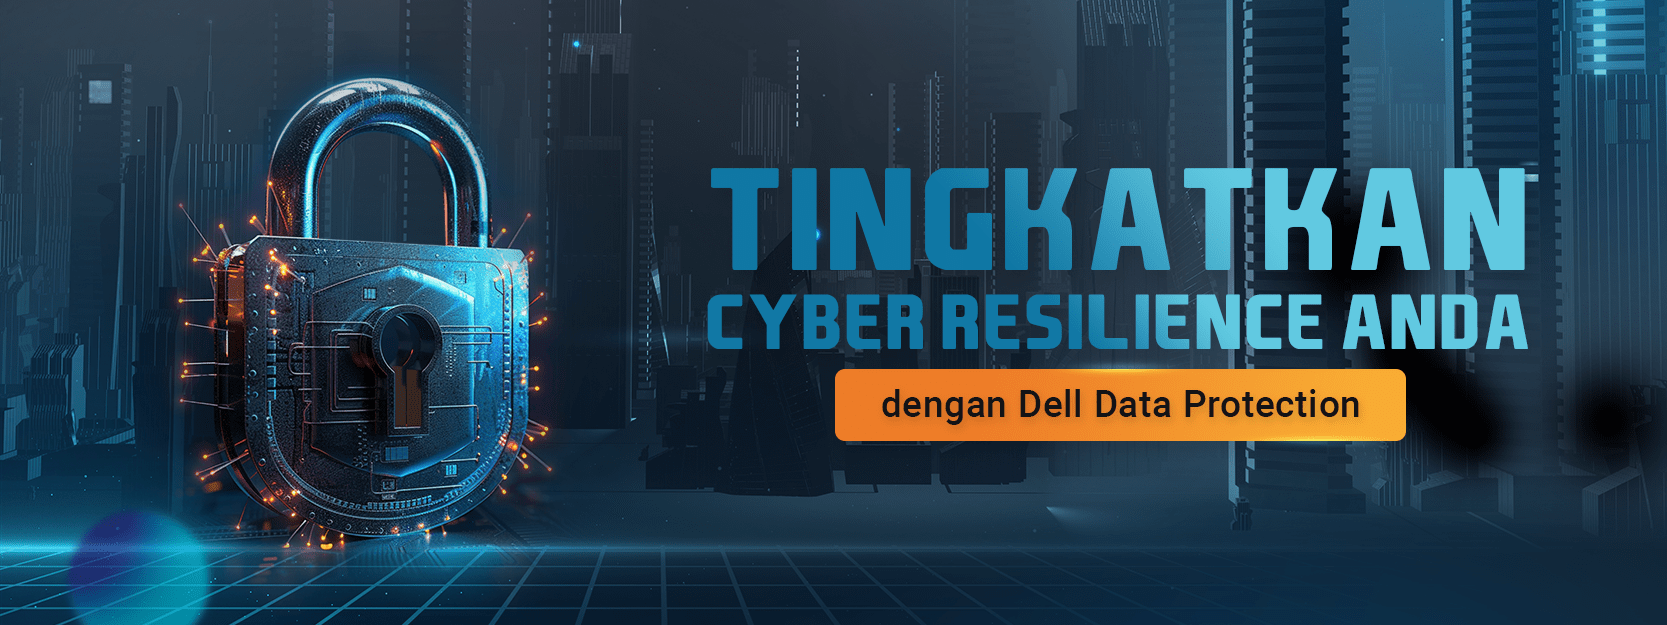 Tingkatkan Cyber Resilience anda dengan Dell Data Protection